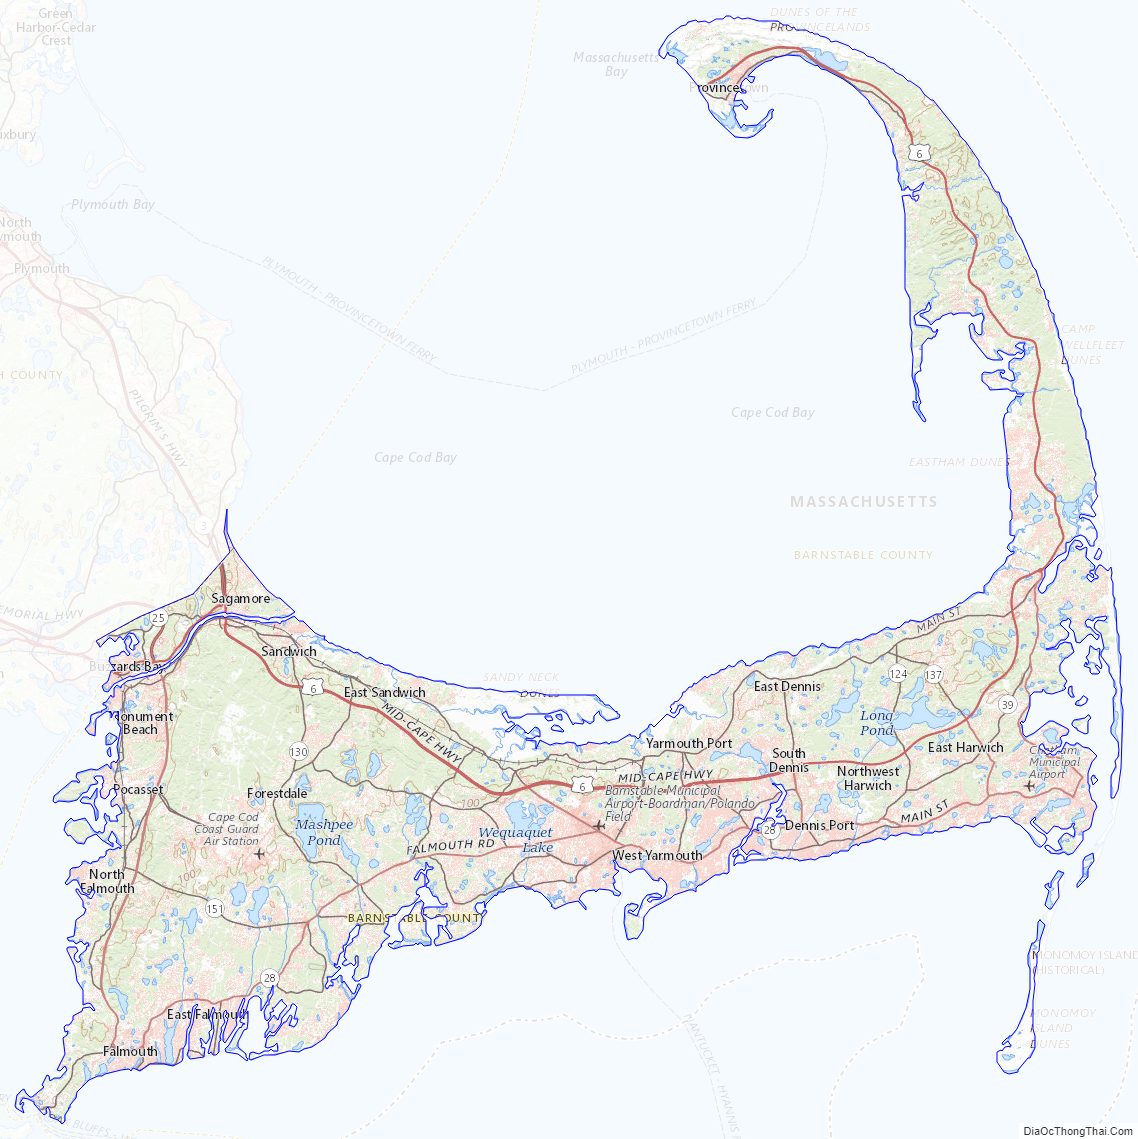 Topographic map of Barnstable County, Massachusetts